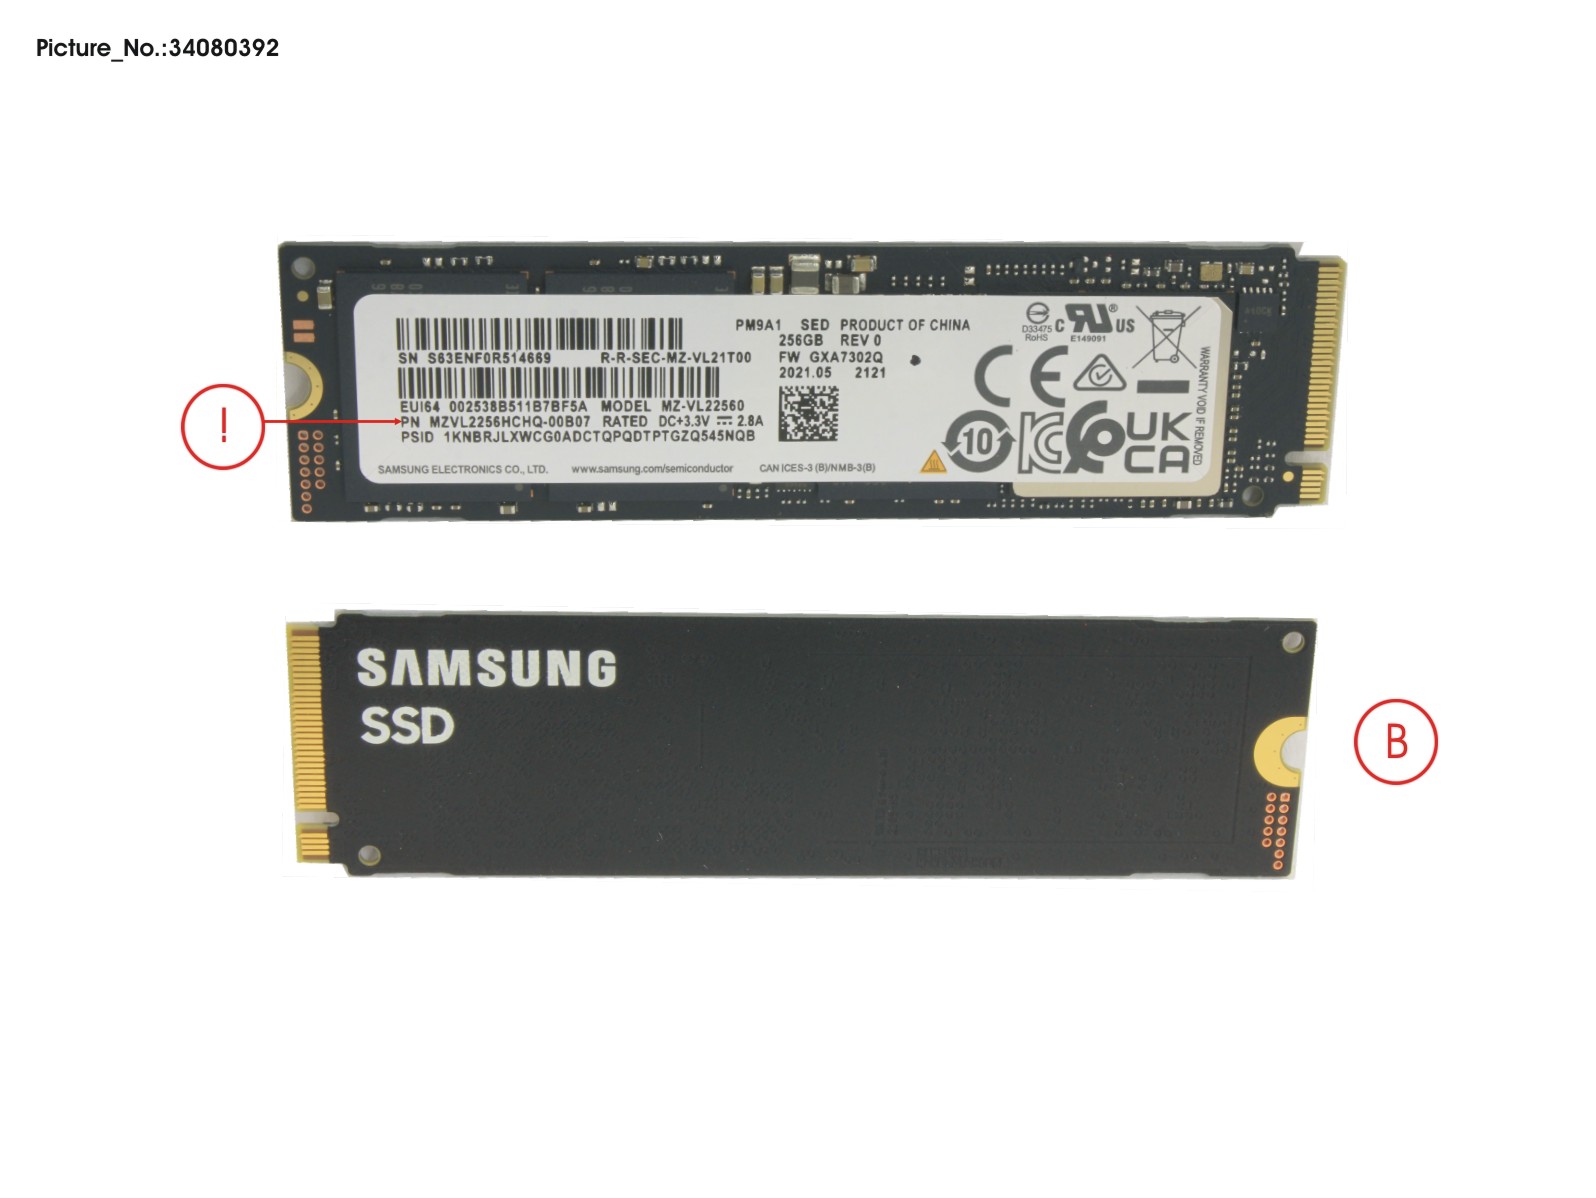 SSD PCIE M.2 2280 256GB PM9A1 (SED)